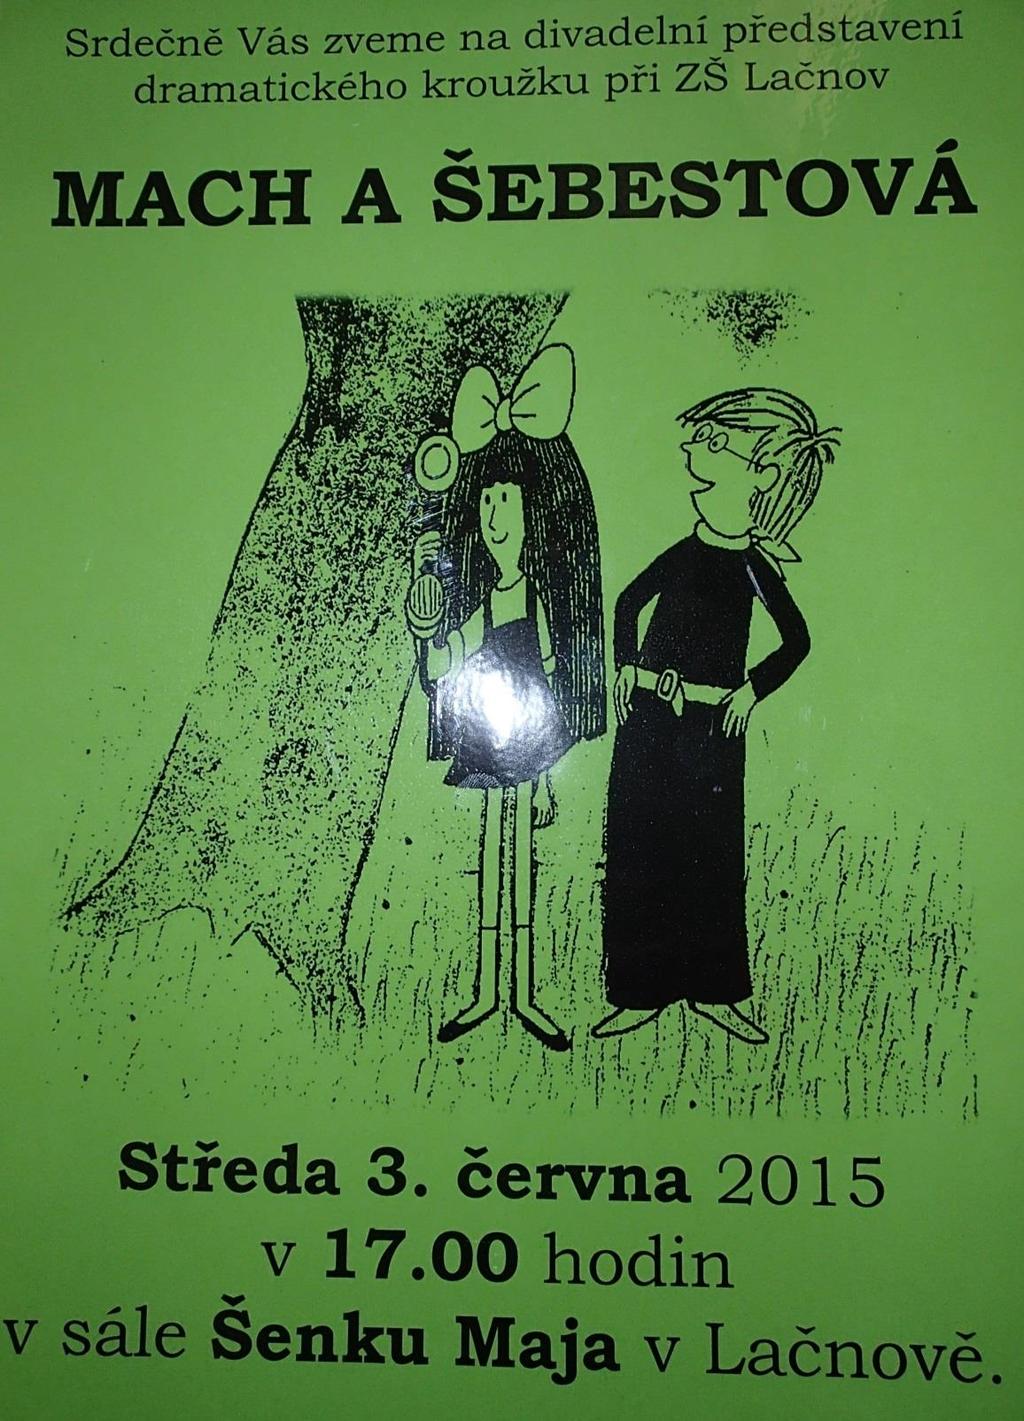 Plakát na divadelní představení Představení mimo naši půdu 2 představení - Mateřská